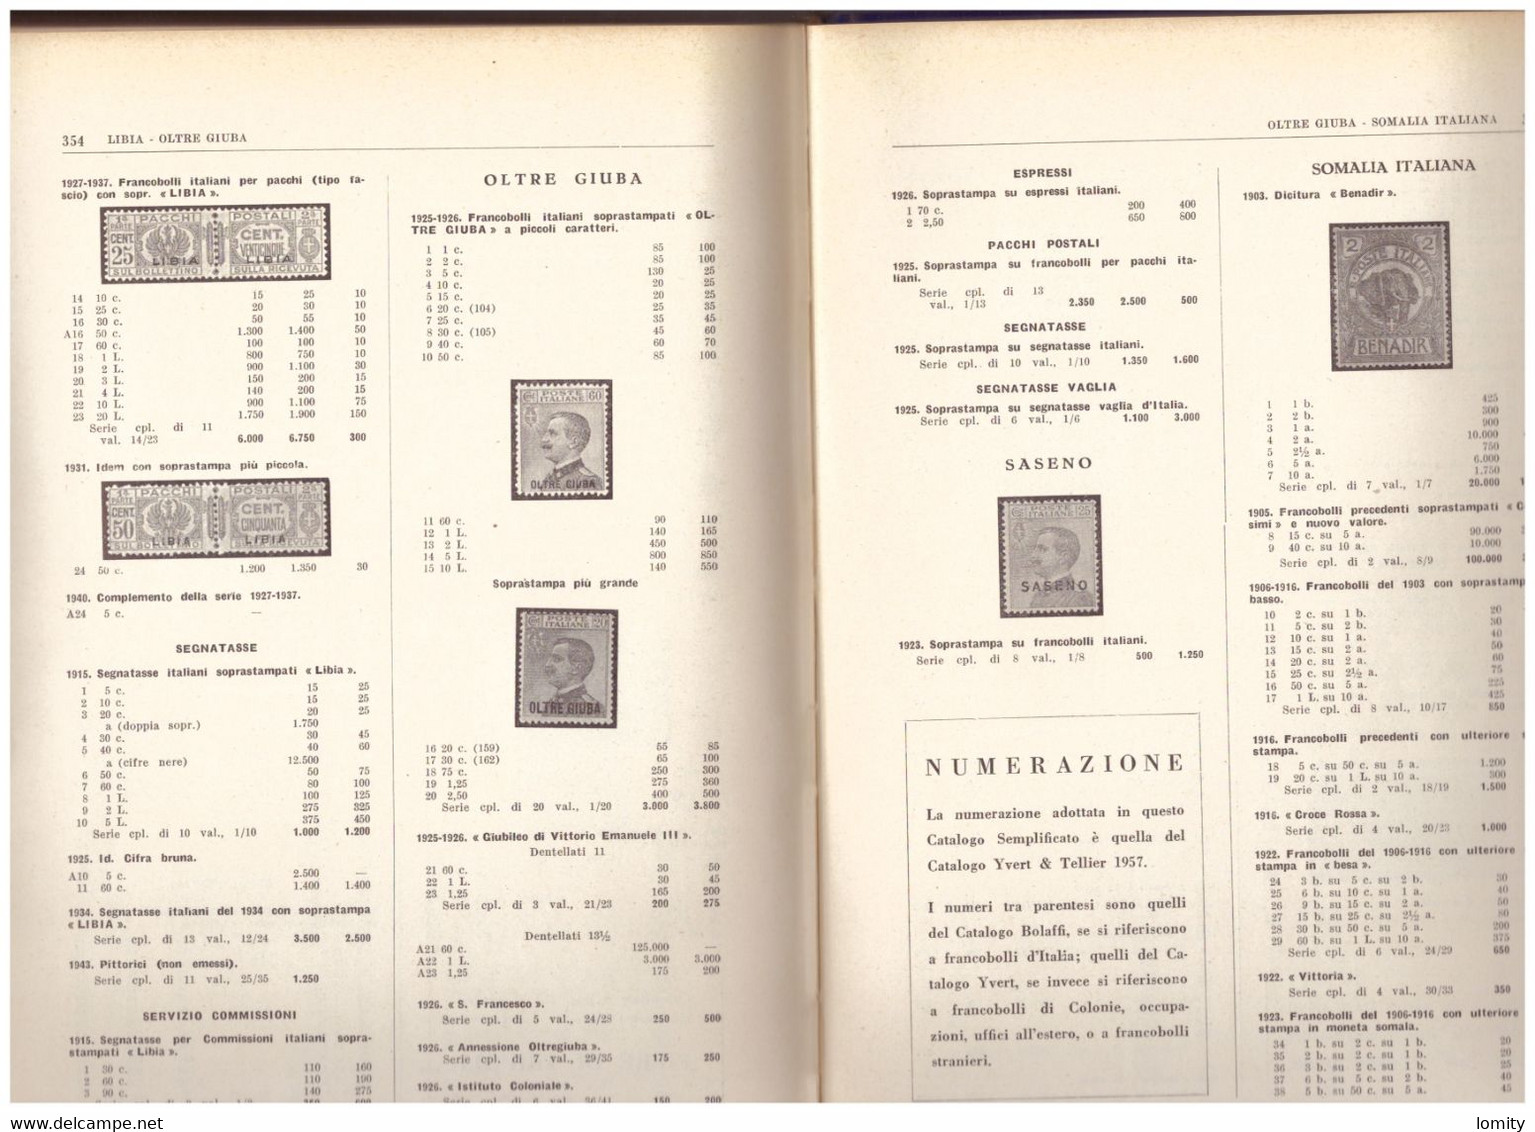 Catalogue Italie Bolaffi 1957 Catalogo Dei Francobelli Italiani 372 Pages - Italië